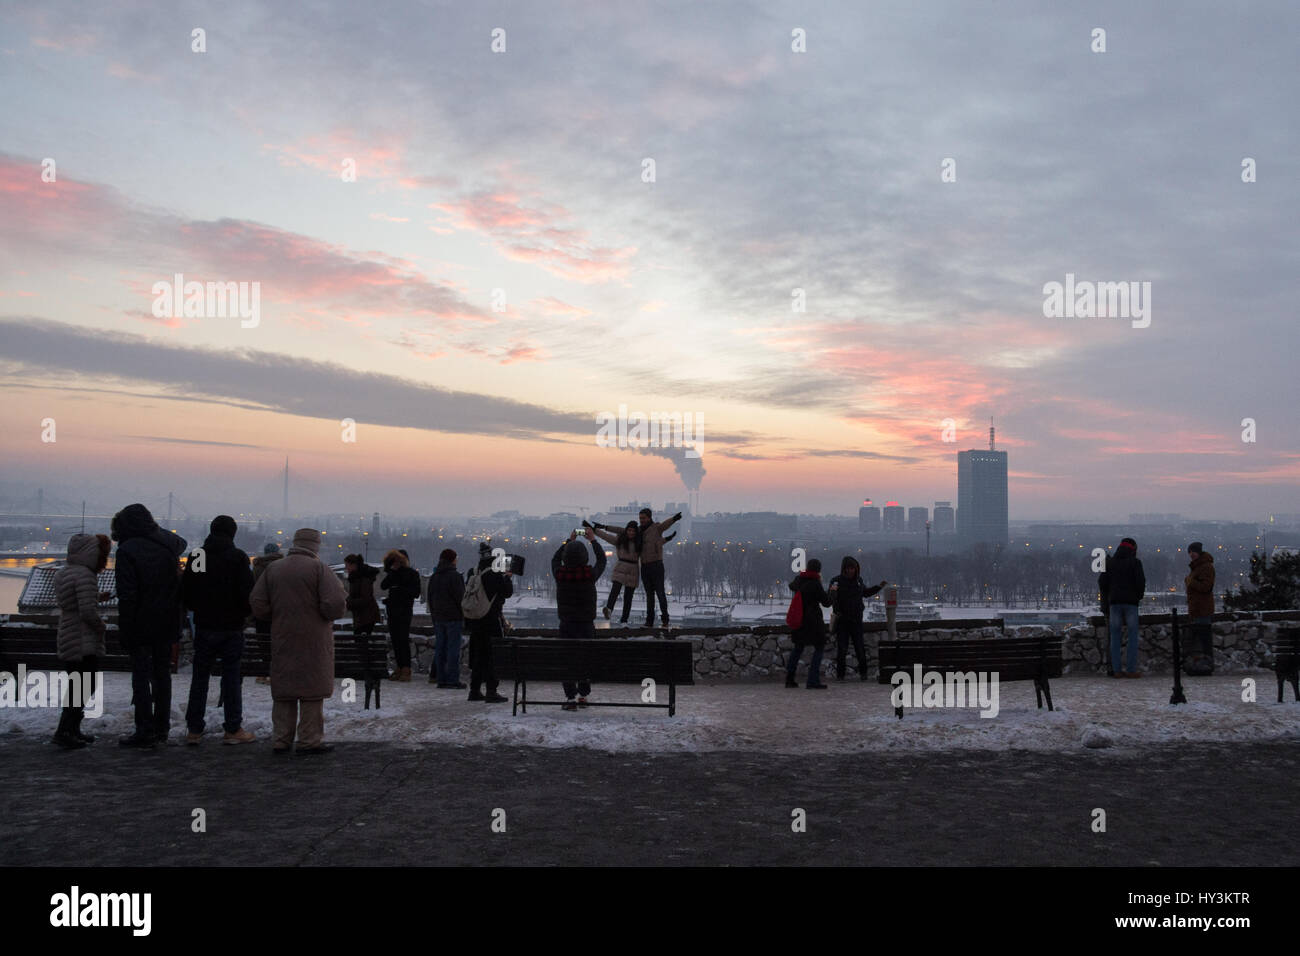 A Belgrado, in Serbia - 1 gennaio 2015: le persone scattano foto di Belgrado Nuova (Novi Beograd) dalla fortezza di Kalemegdan silhouette di persone di scattare le foto Foto Stock